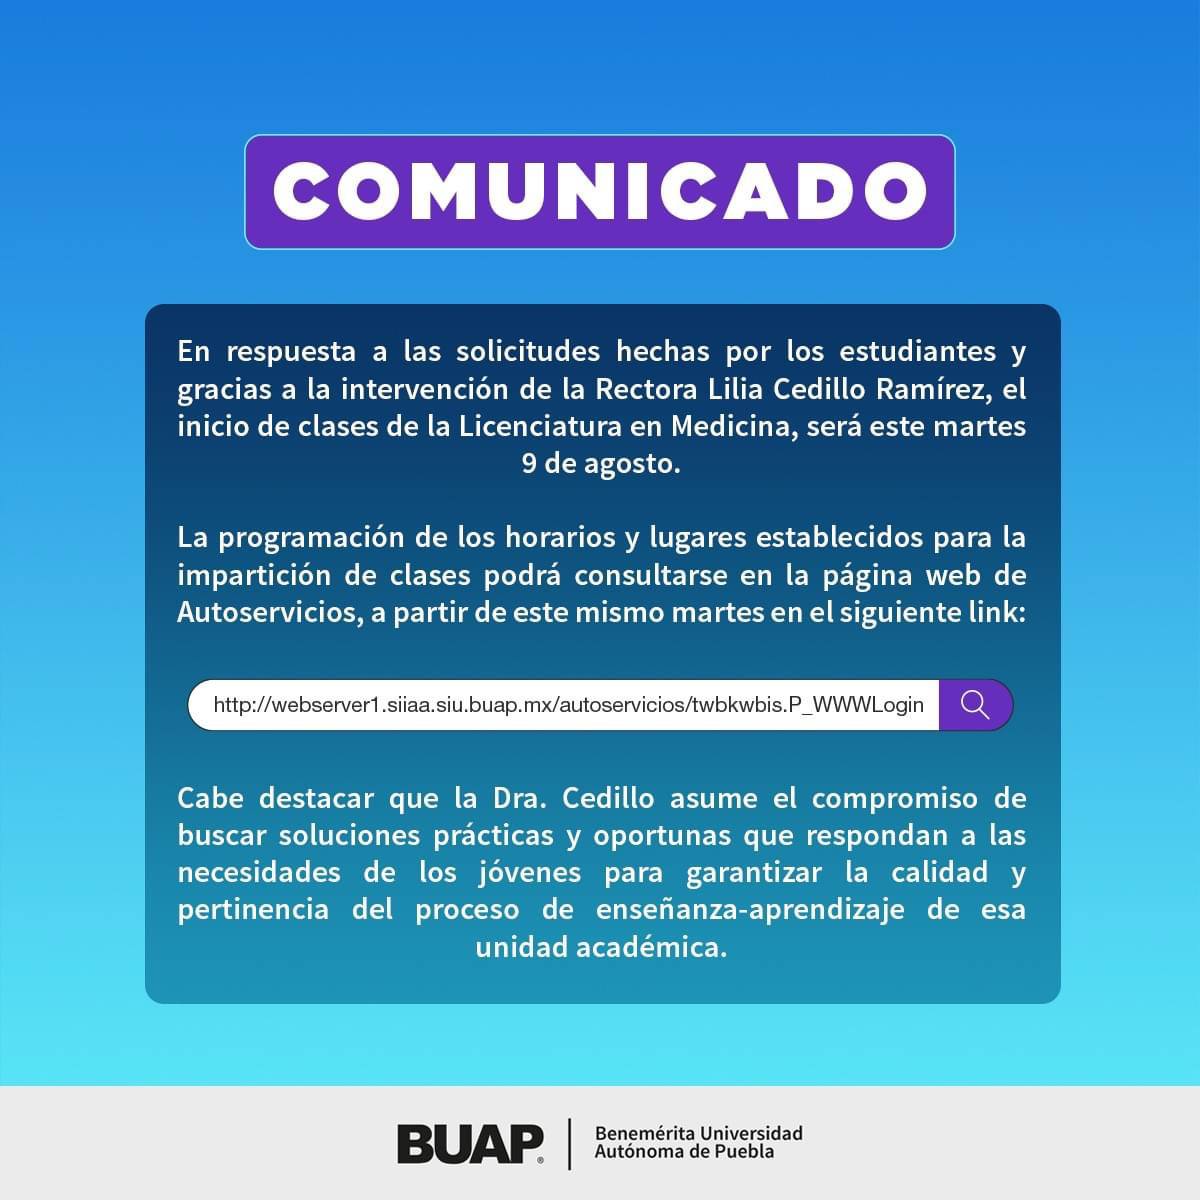 Video desde Puebla: BUAP confirma que este martes comienzan clases presenciales en Facultad de Medicina